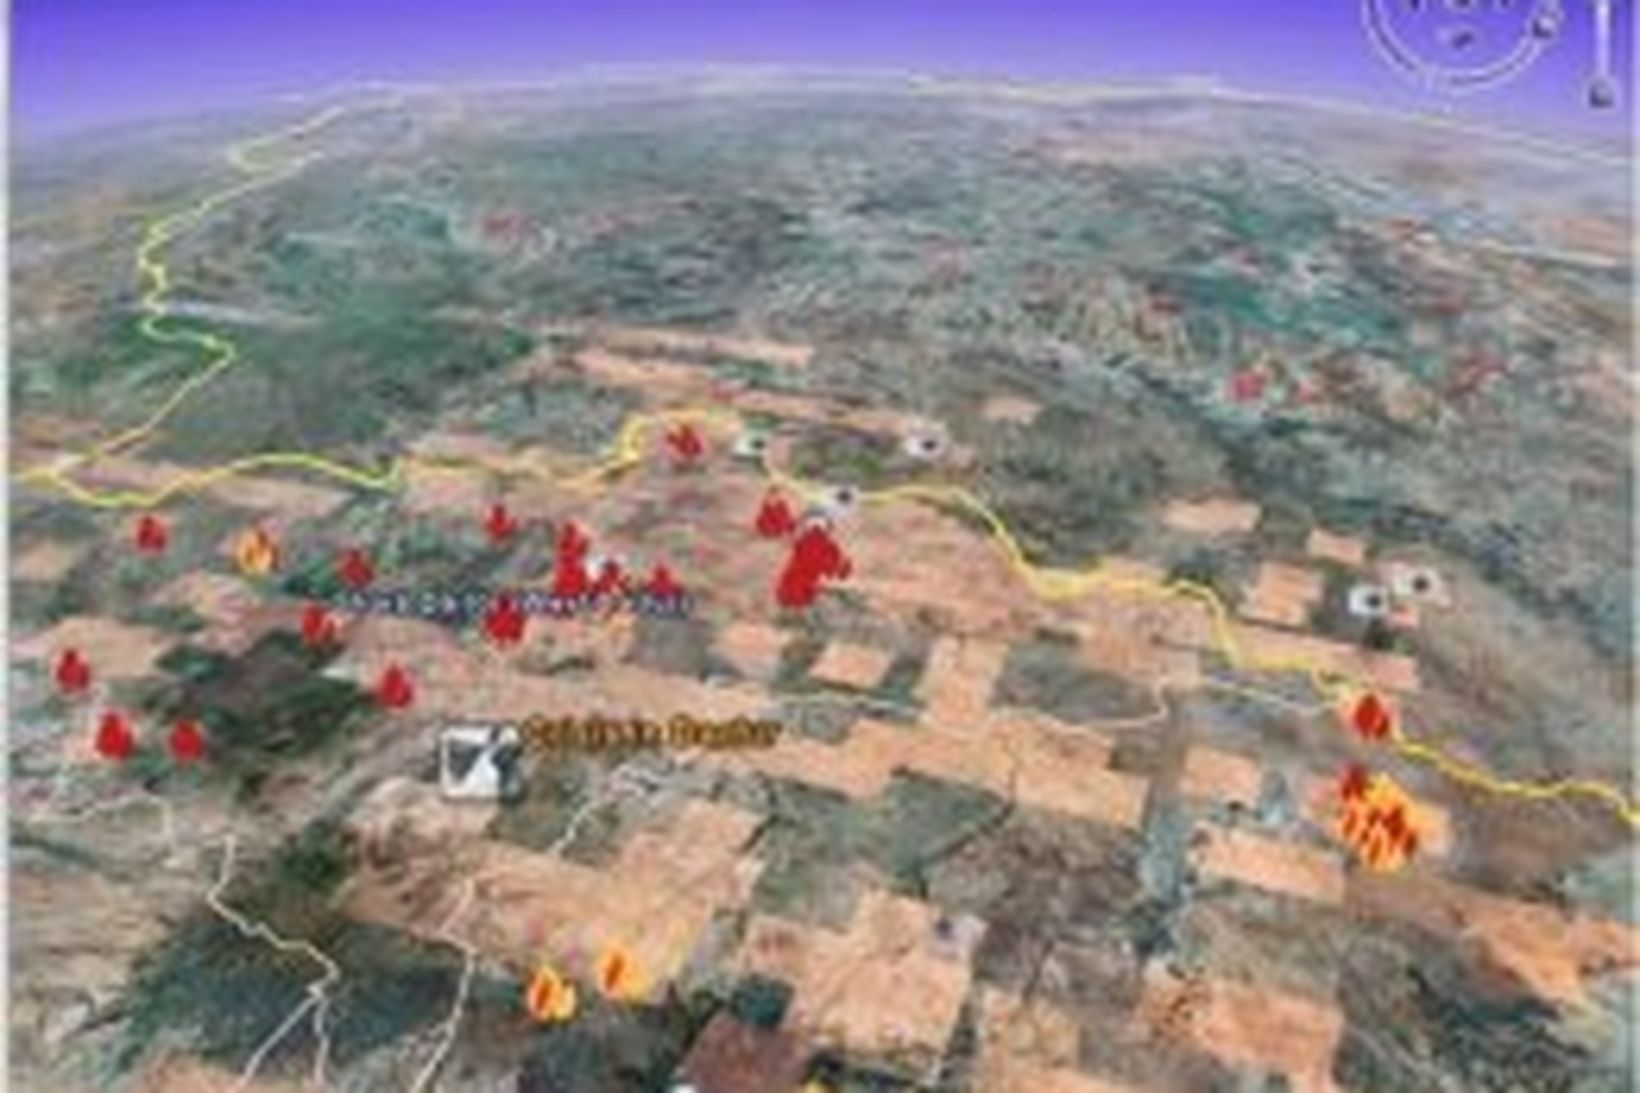 Myndir af vef Google Earth sem sýnir Darfur-hérað í Súdan